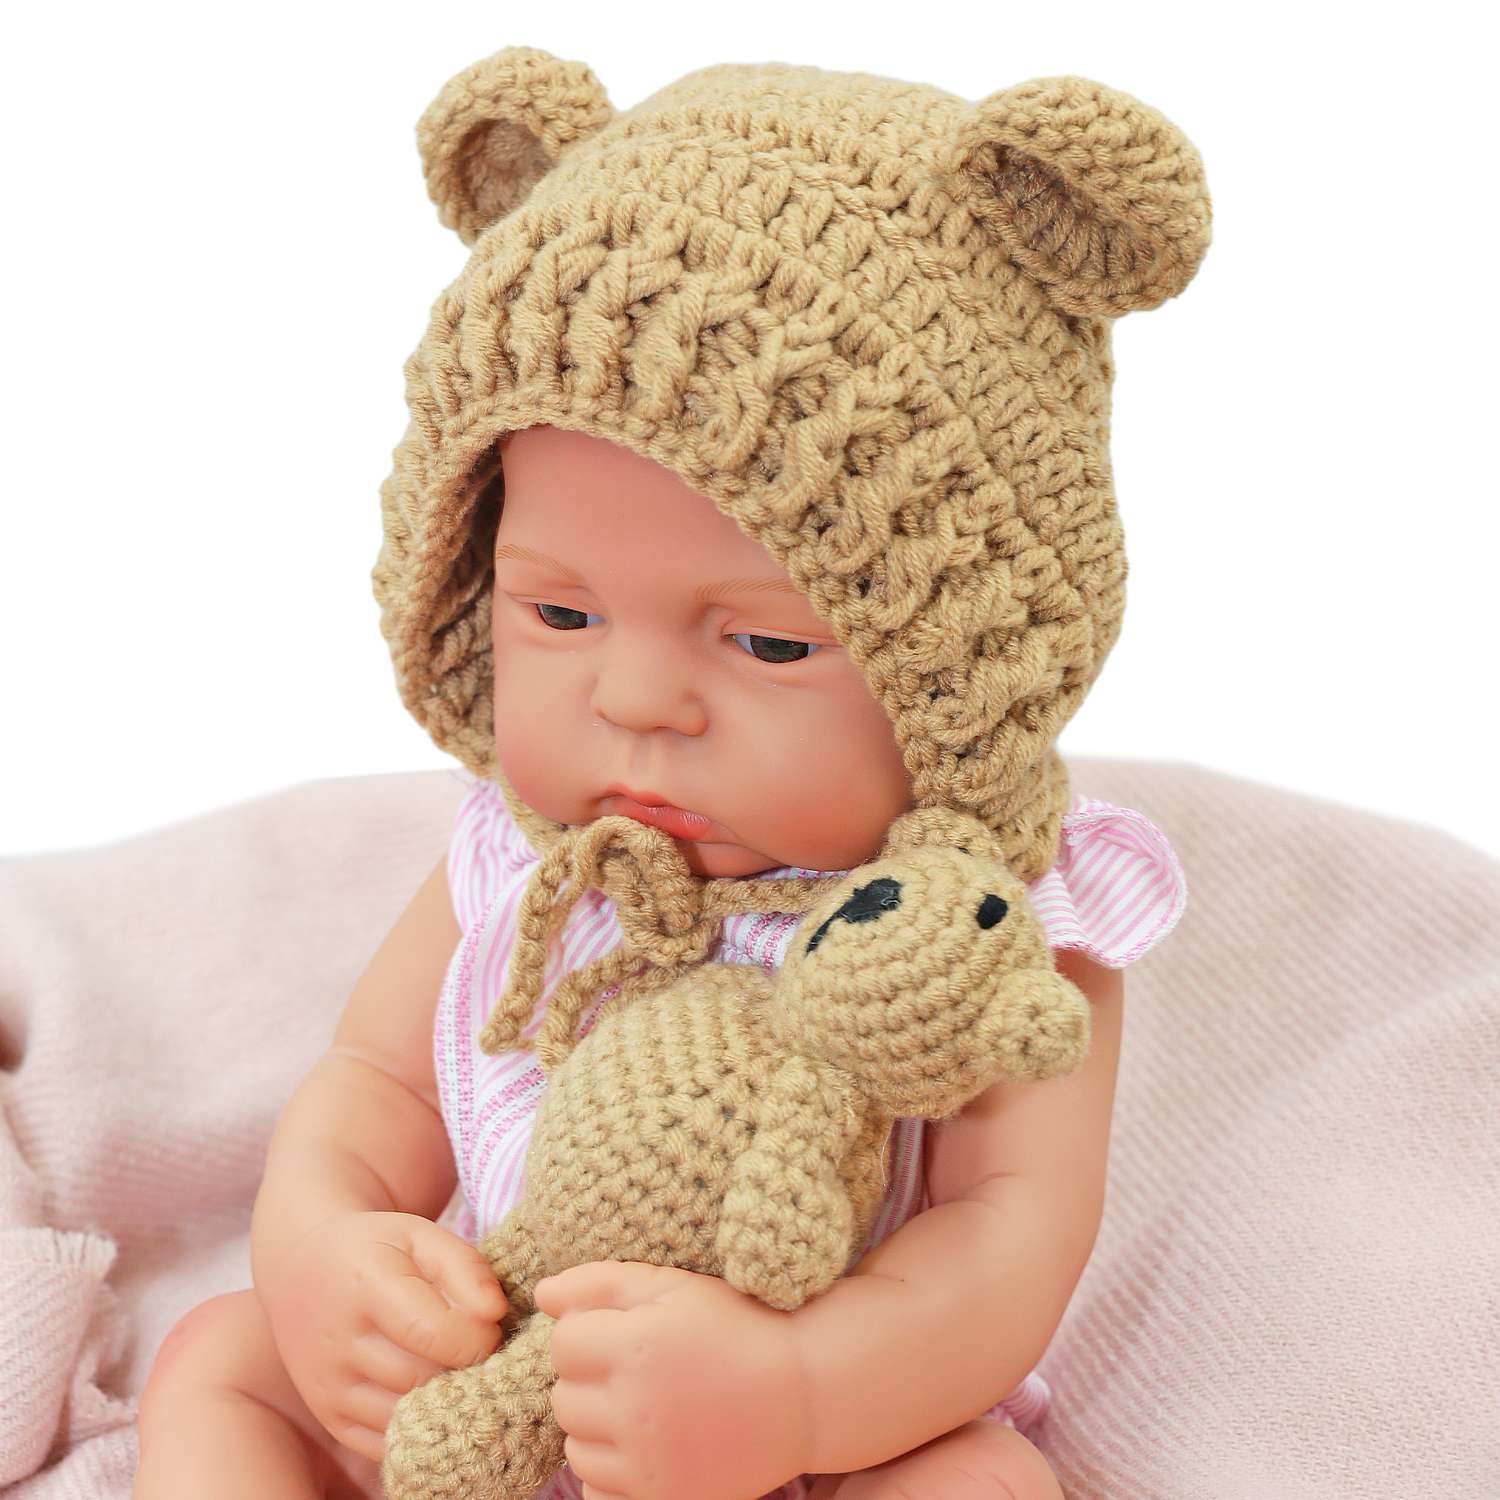 Набор для фотосессии ребенка SHARKTOYS от 0 до 3 месяцев мягкая игрушка мишка и шапочка 3570001 - фото 3